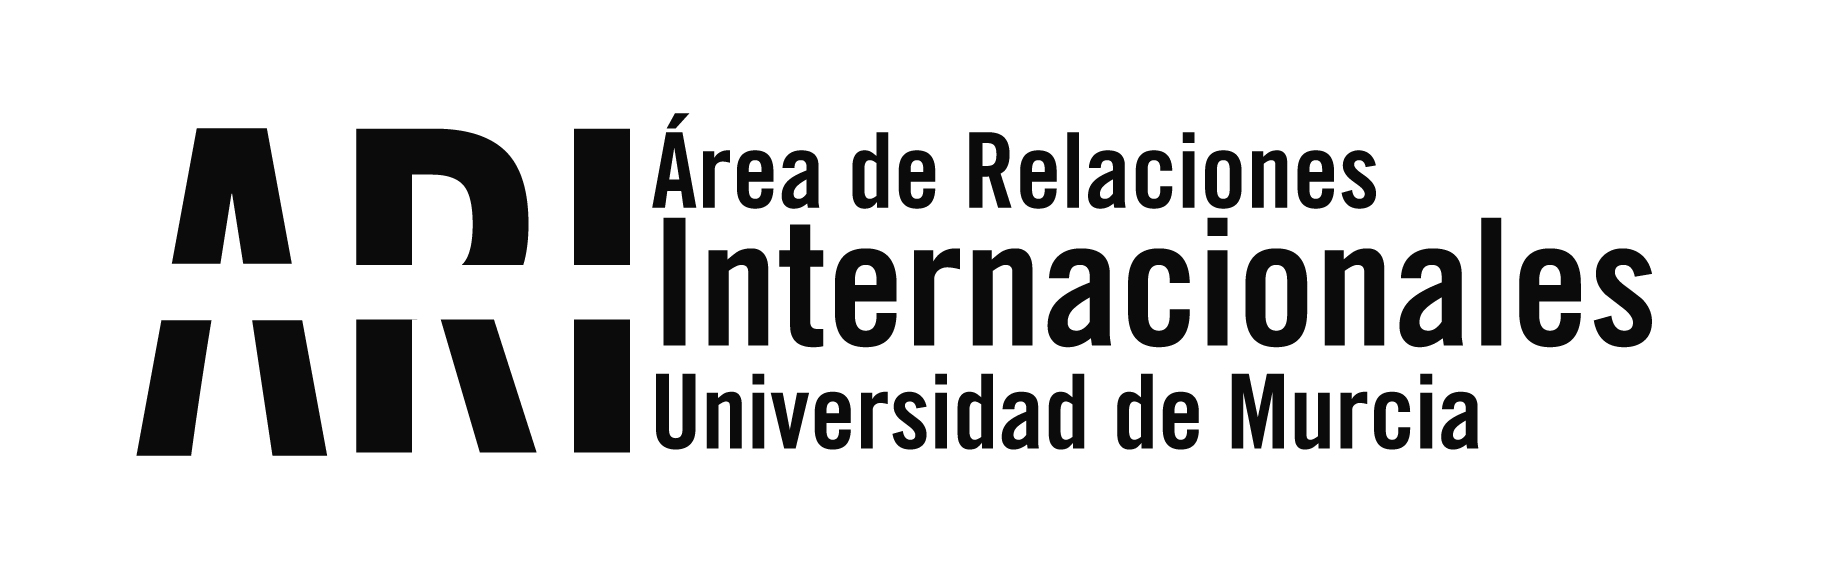 20180702 Presentación Grado Relaciones Internacionales de la UMU - Eventos - Área de Relaciones Internacionales